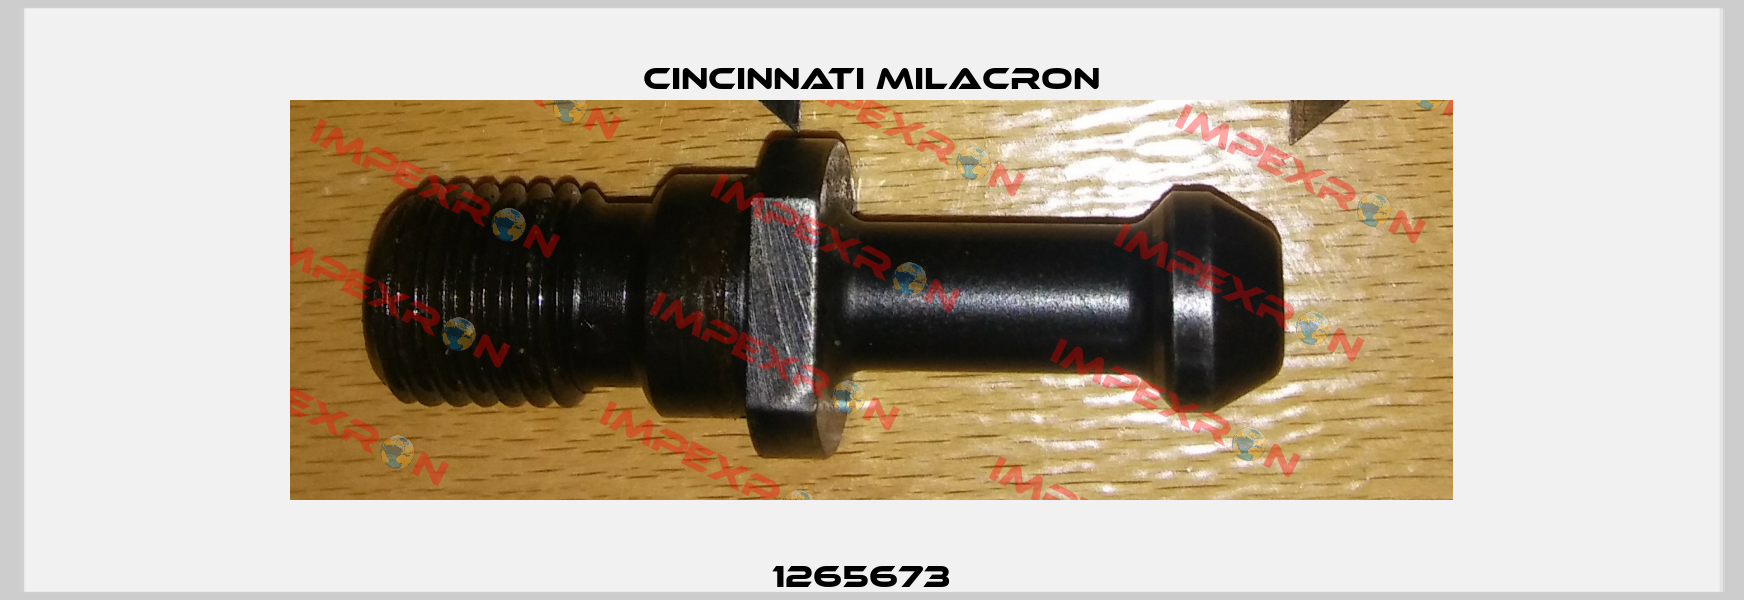 1265673   Cincinnati Milacron